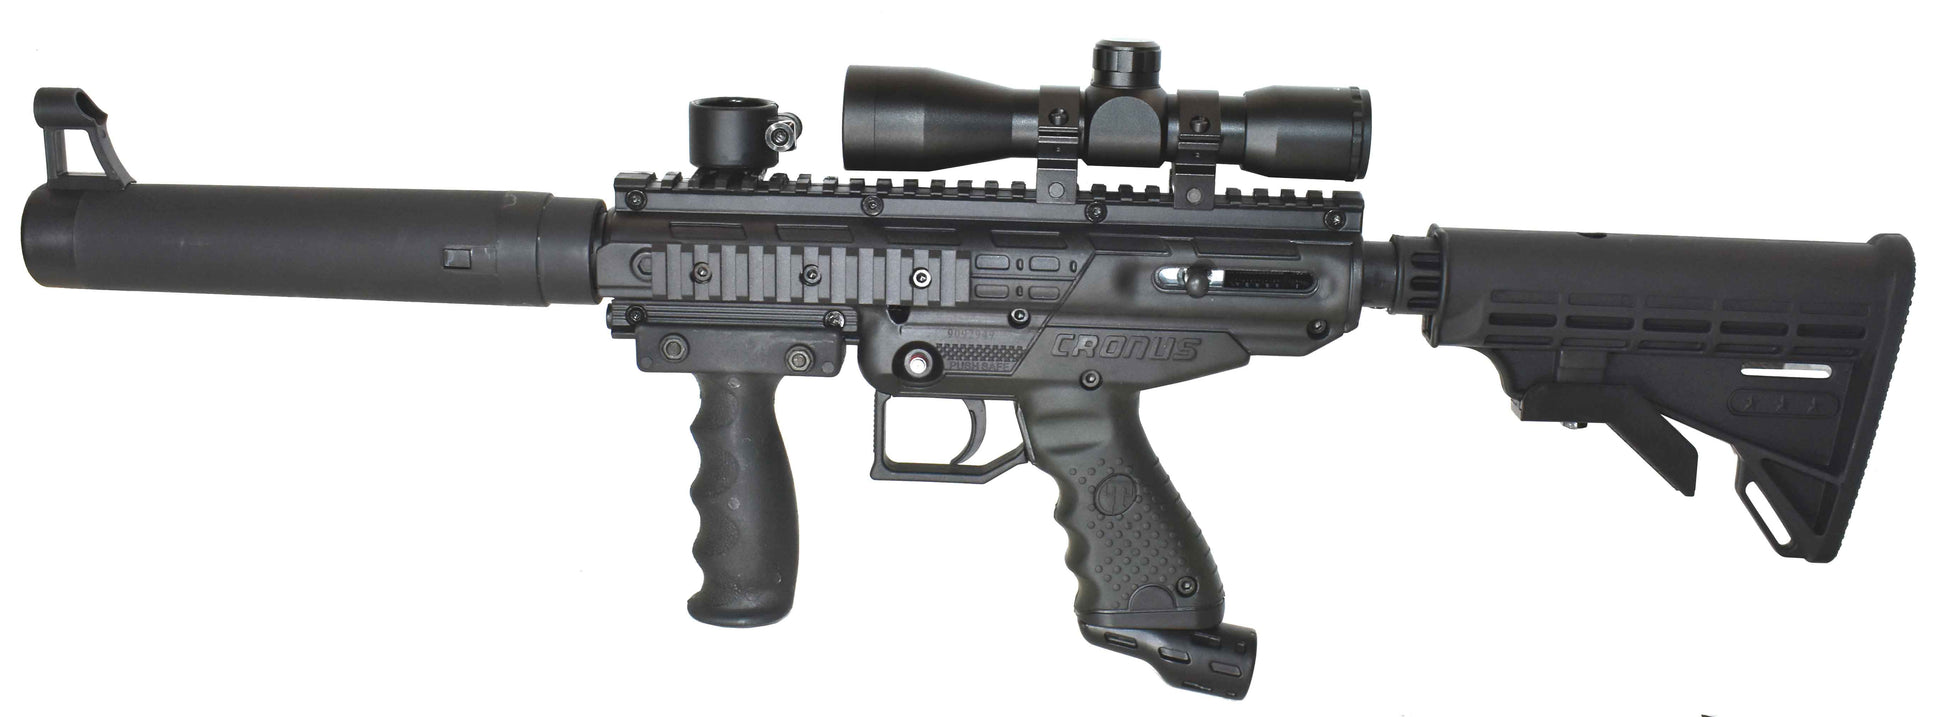 TRINITY 4X32 tactical scope for tippmann cronus paintball gun. – TRINITY  PAINTBALL